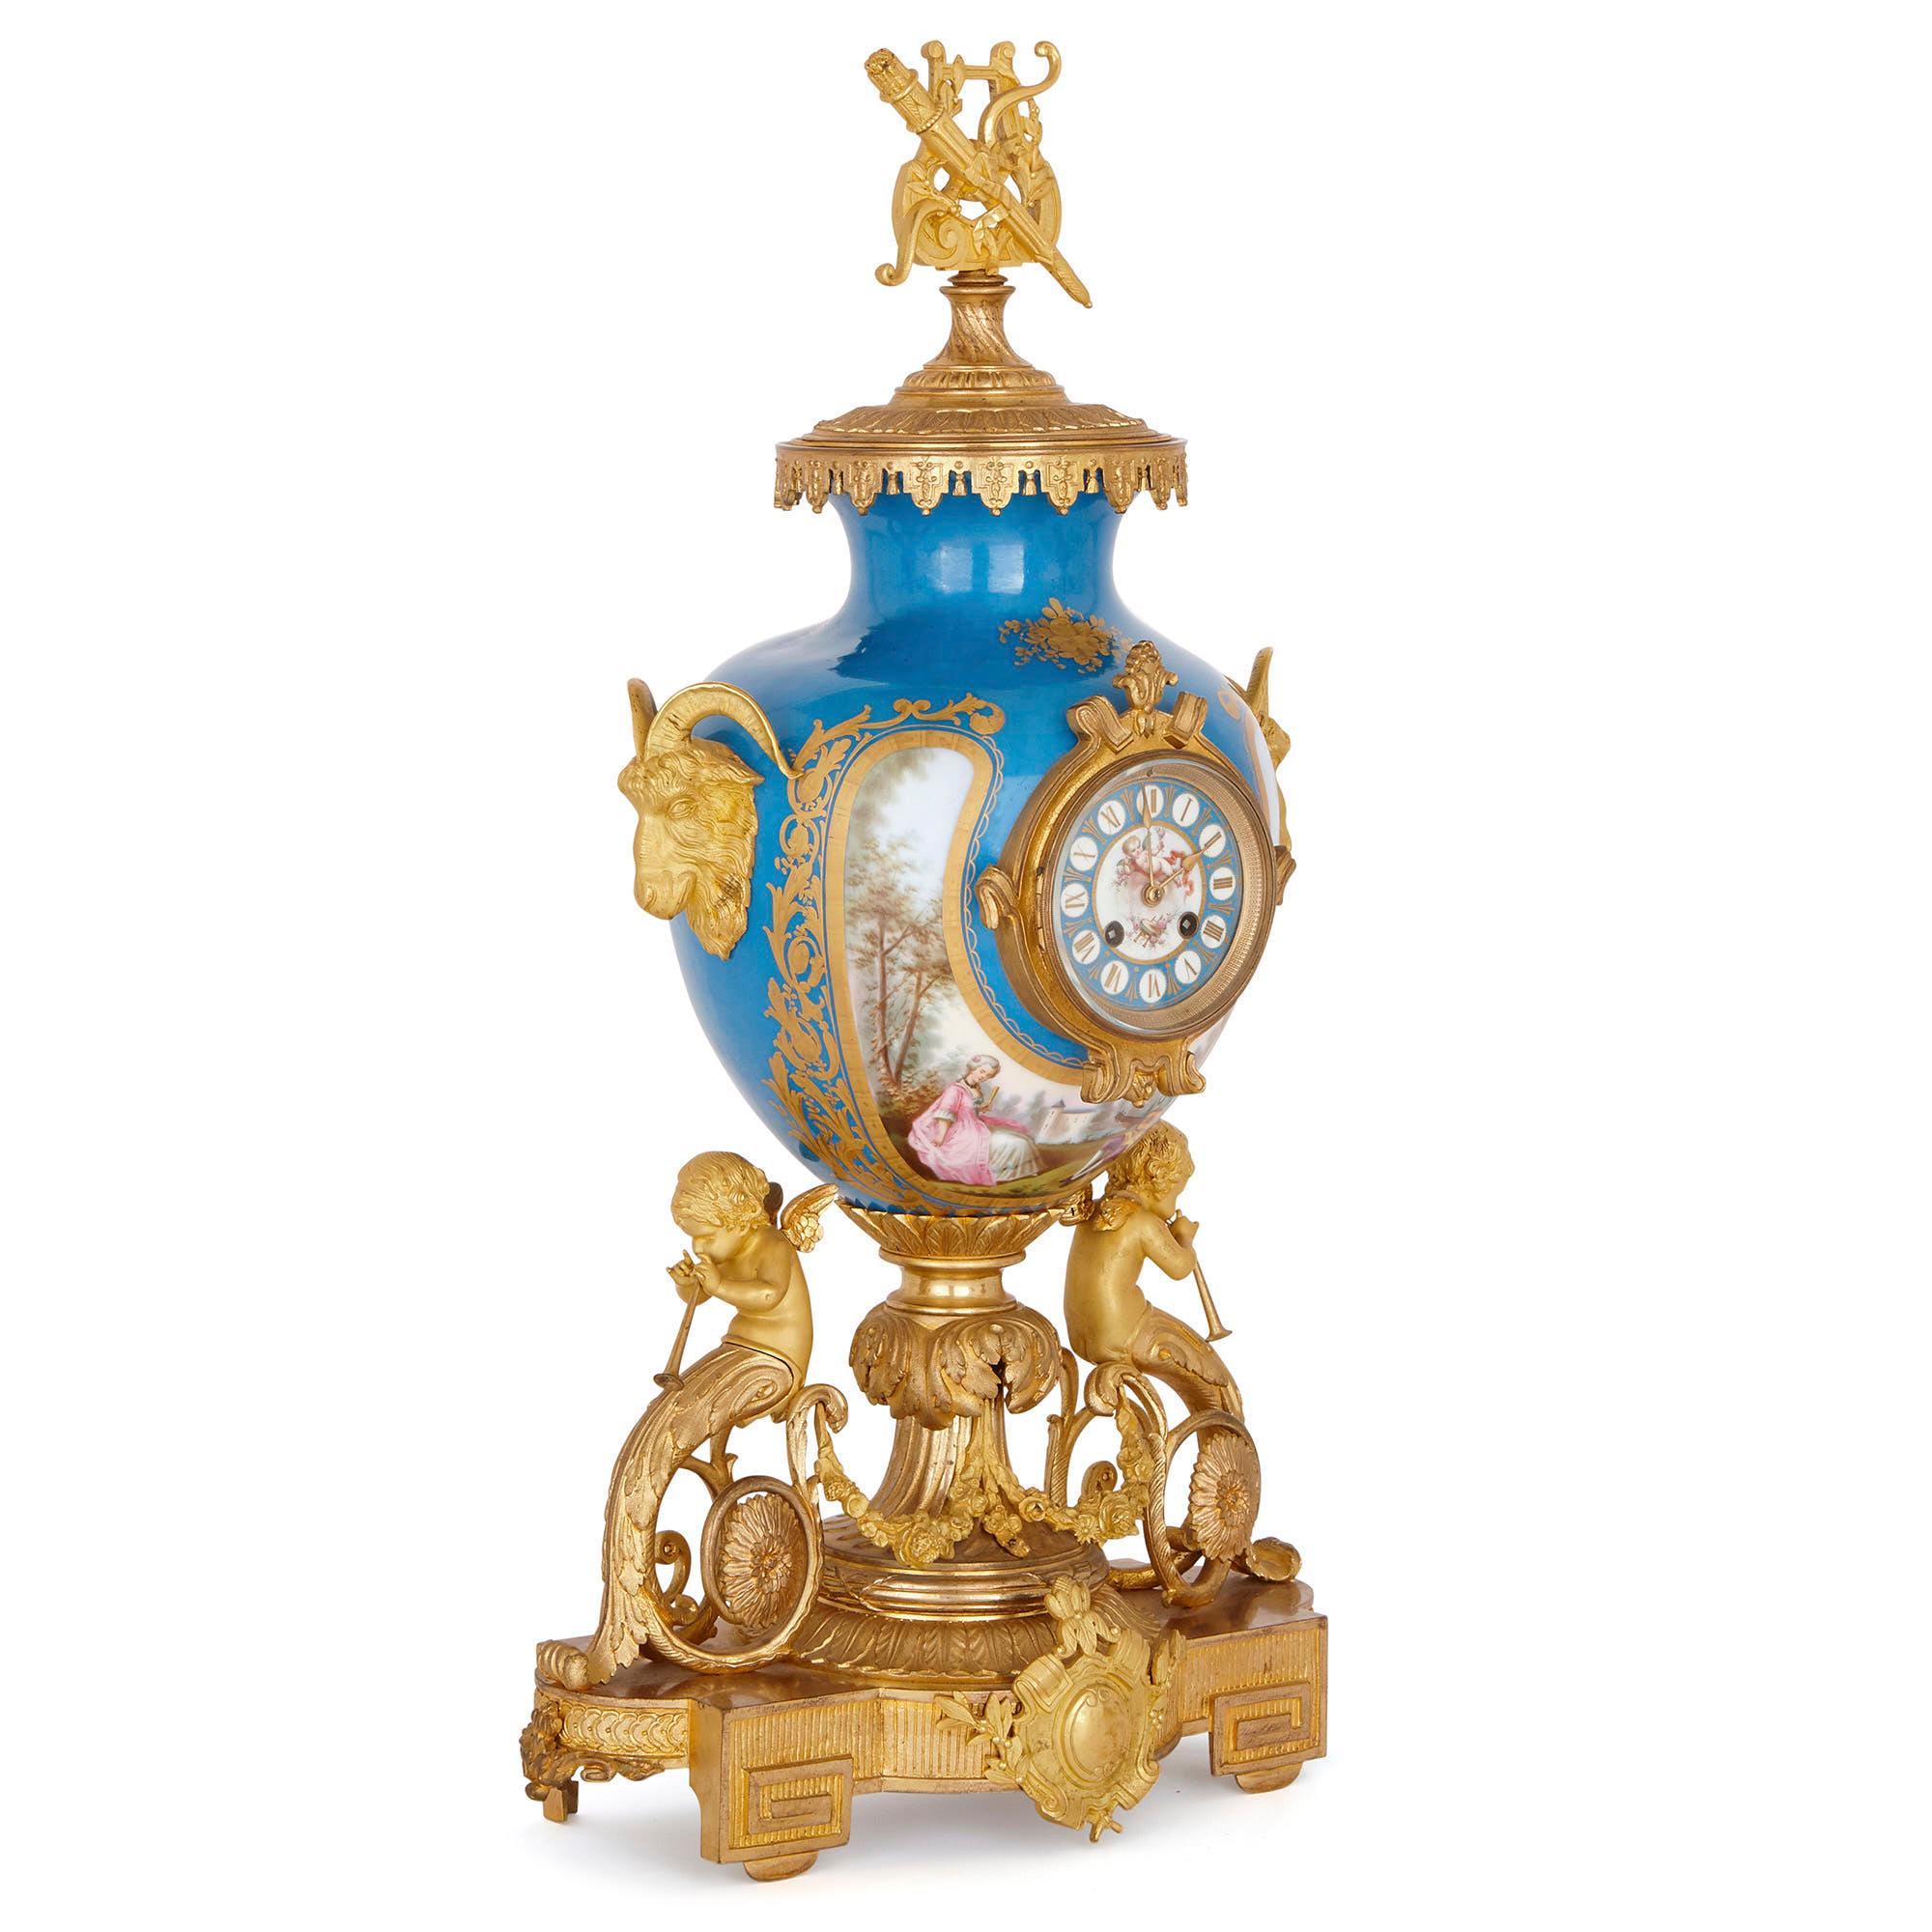 Ce grand ensemble d'horloges, composé d'une horloge de cheminée et d'une paire de candélabres, est conçu dans le style des articles de la manufacture de porcelaine de Sèvres. À la manière de la porcelaine de Sèvres, ce service est décoré de